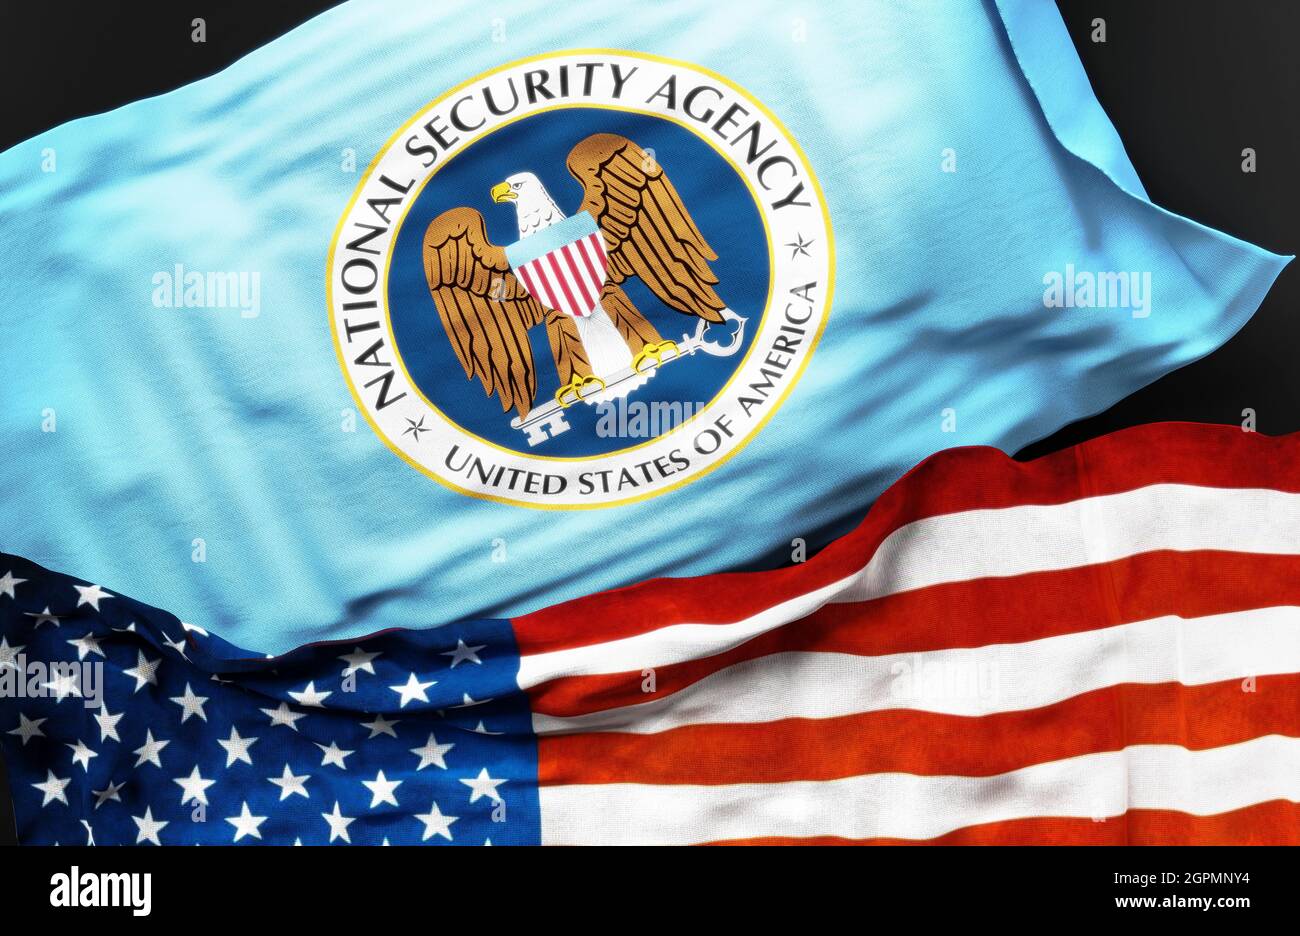 Drapeau de la National Security Agency des États-Unis avec un drapeau des États-Unis d'Amérique comme un symbole d'unité entre eux, illustration 3d Banque D'Images